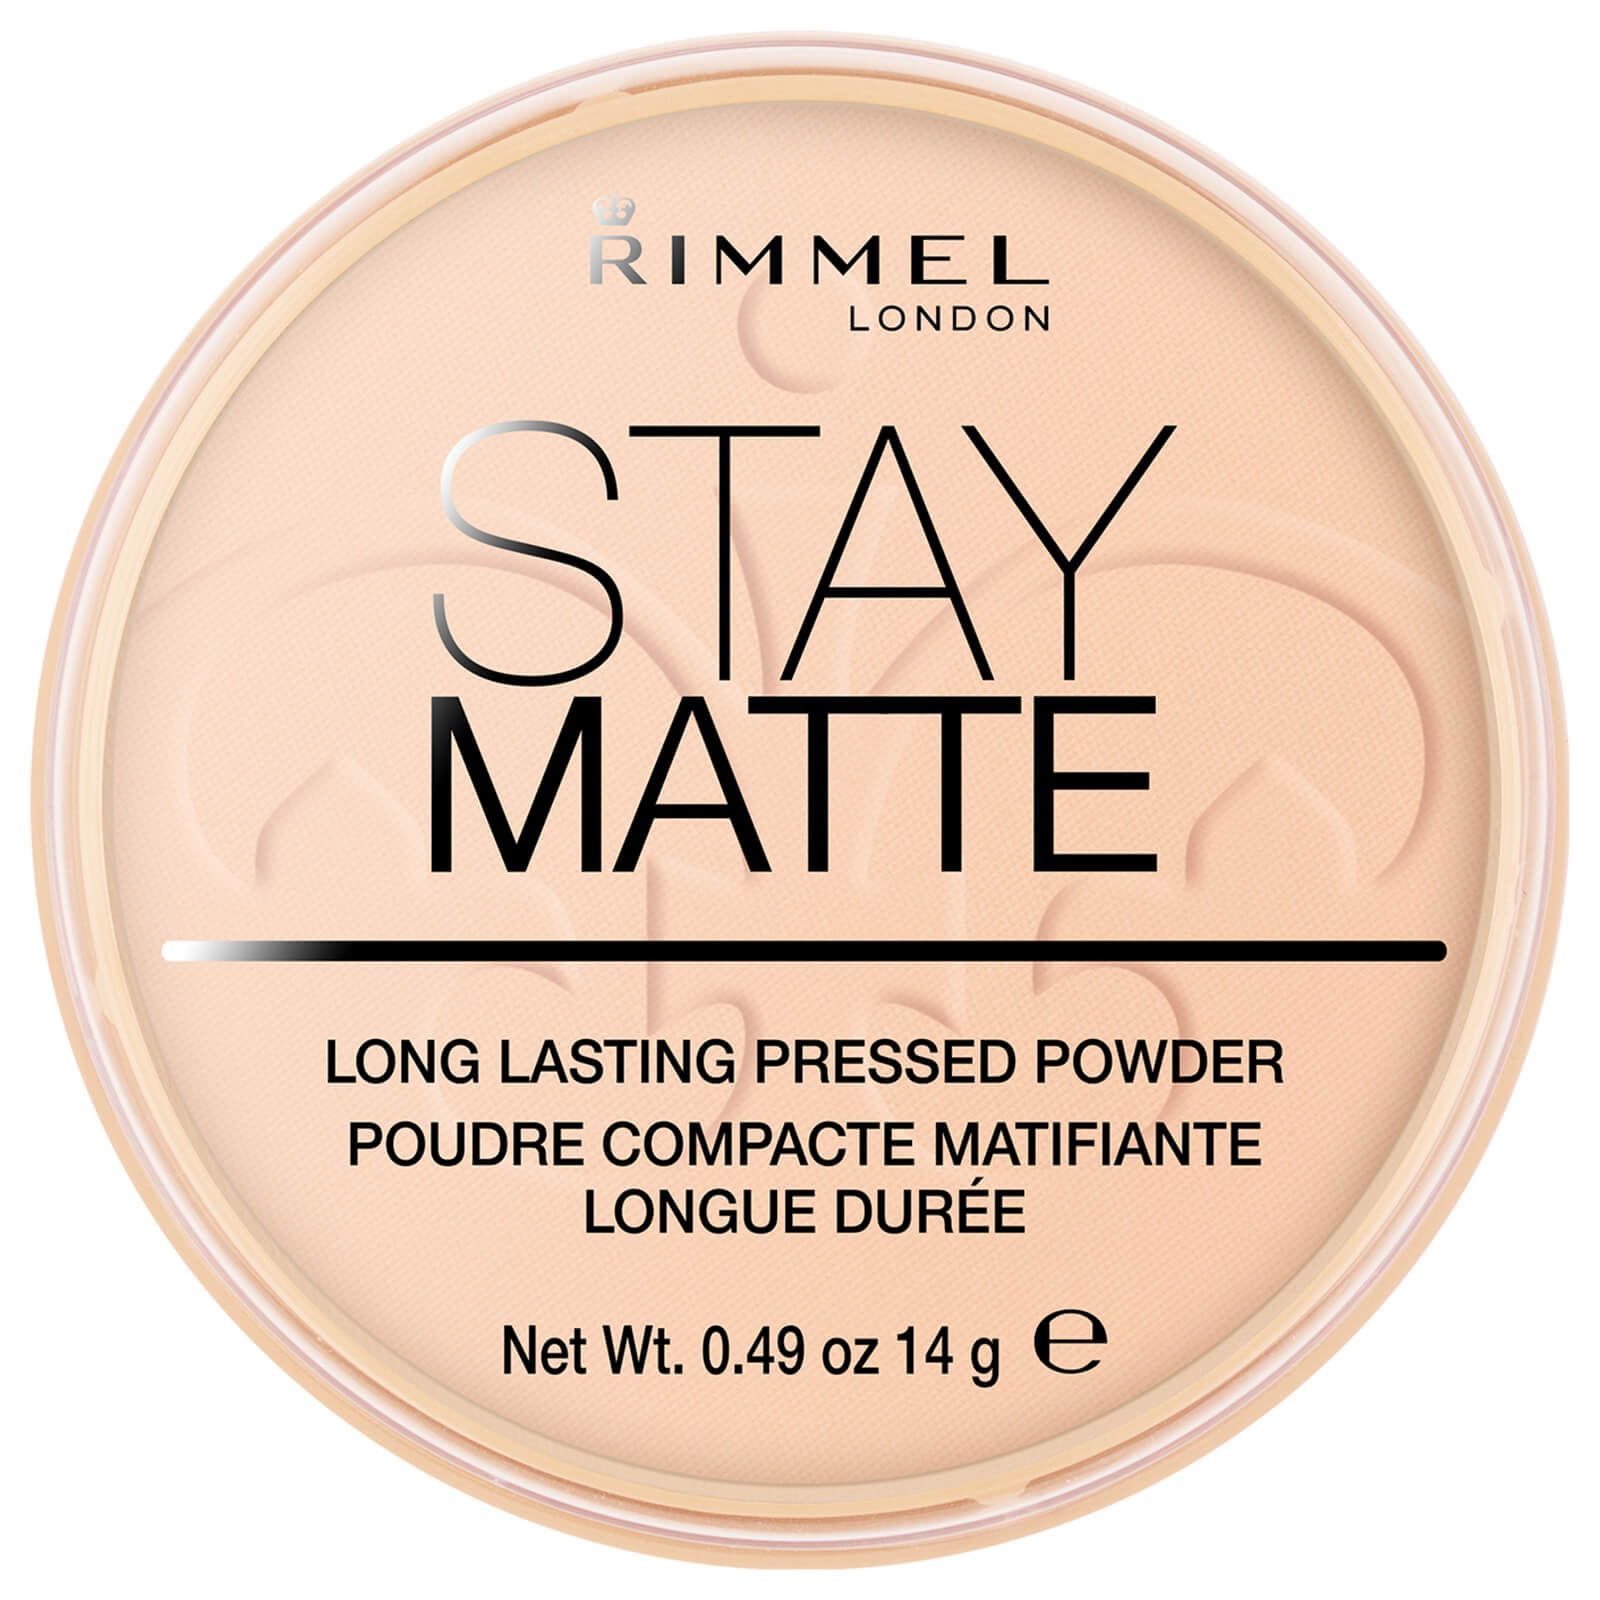 Rimmel Stay Matte Pressed Powder (Various Shades) - Warm Beige von Rimmel